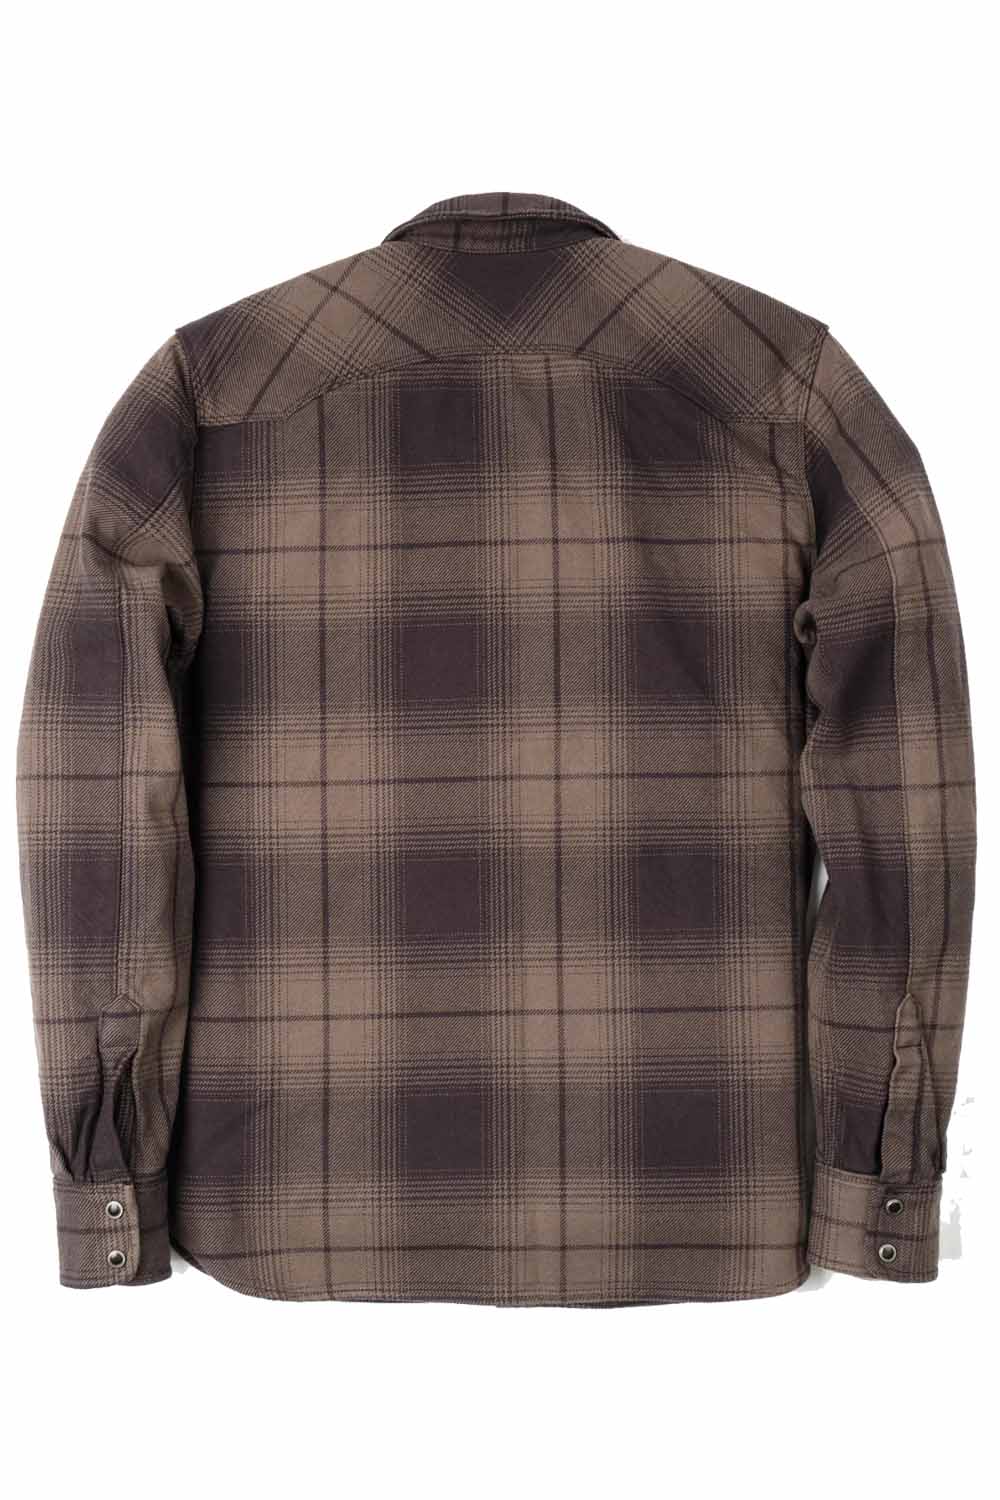 Freenote - Modern Western Shirt - Cedar Shadow Plaid - Back